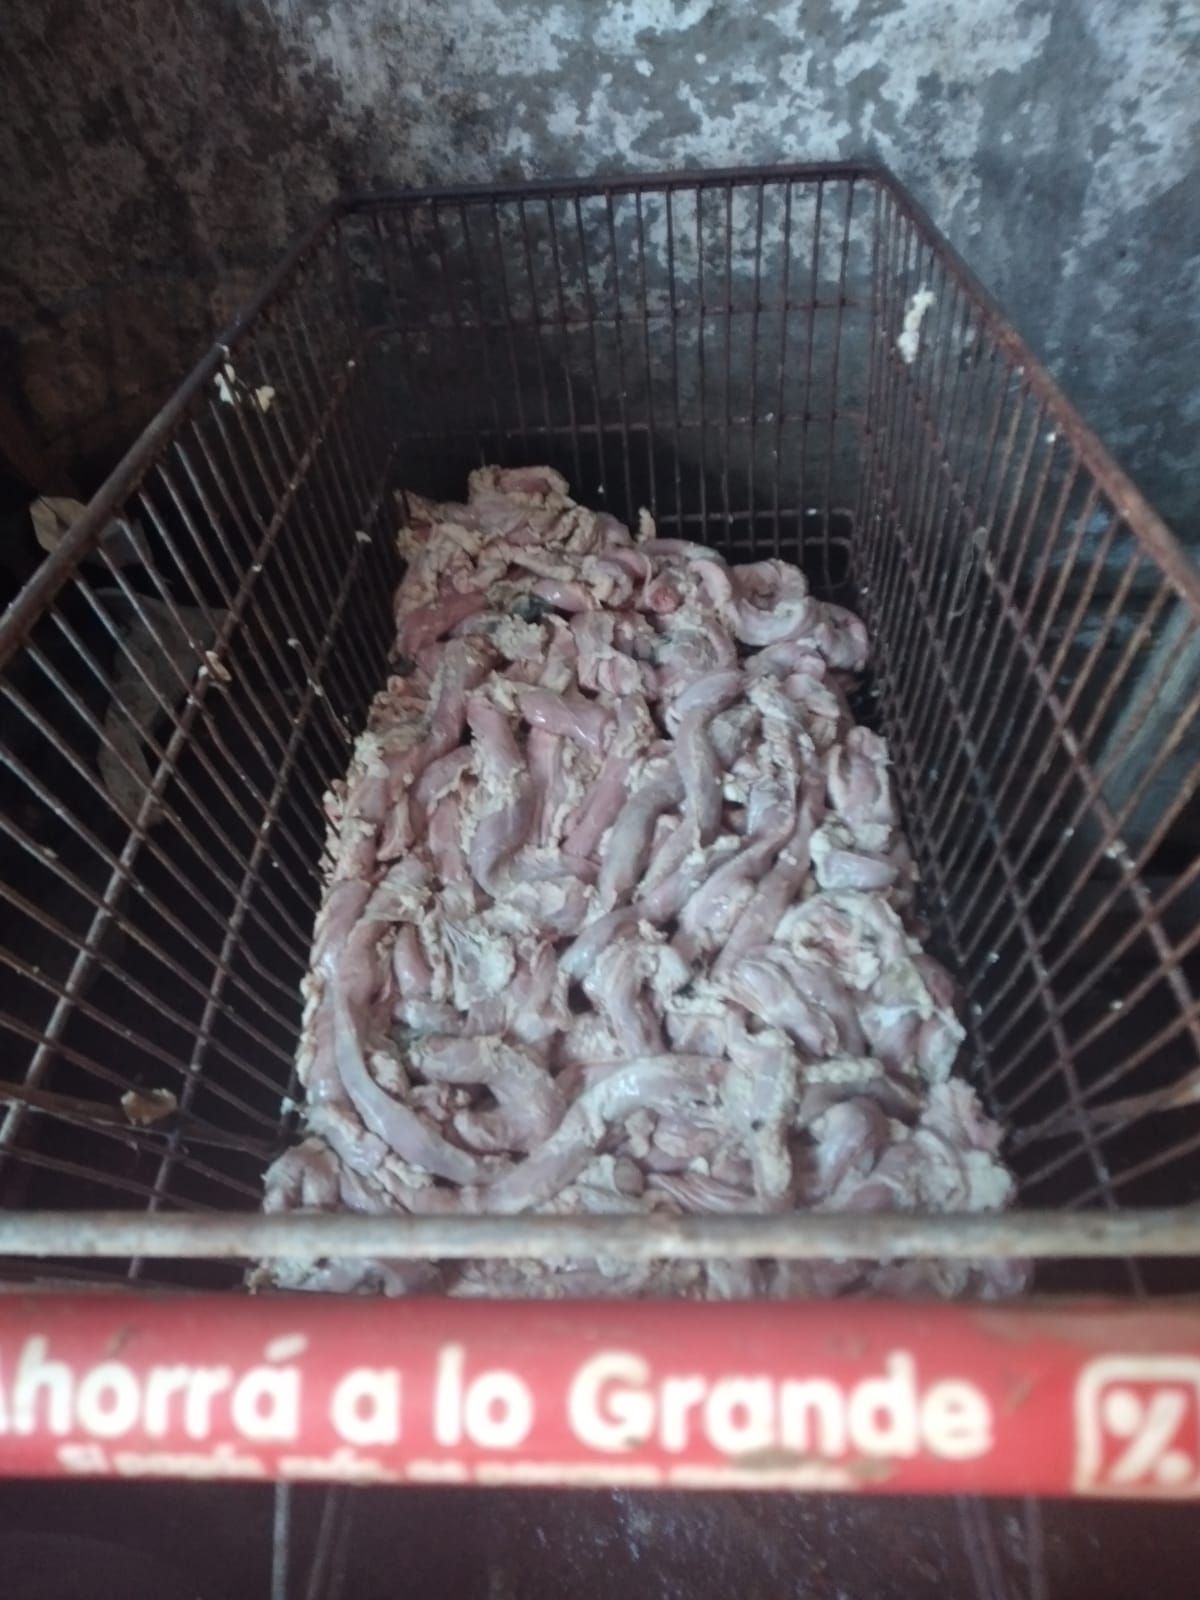 Carne en un changuito de supermercado, uno de las postales horribles del allanamiento en Alejandro Korn.